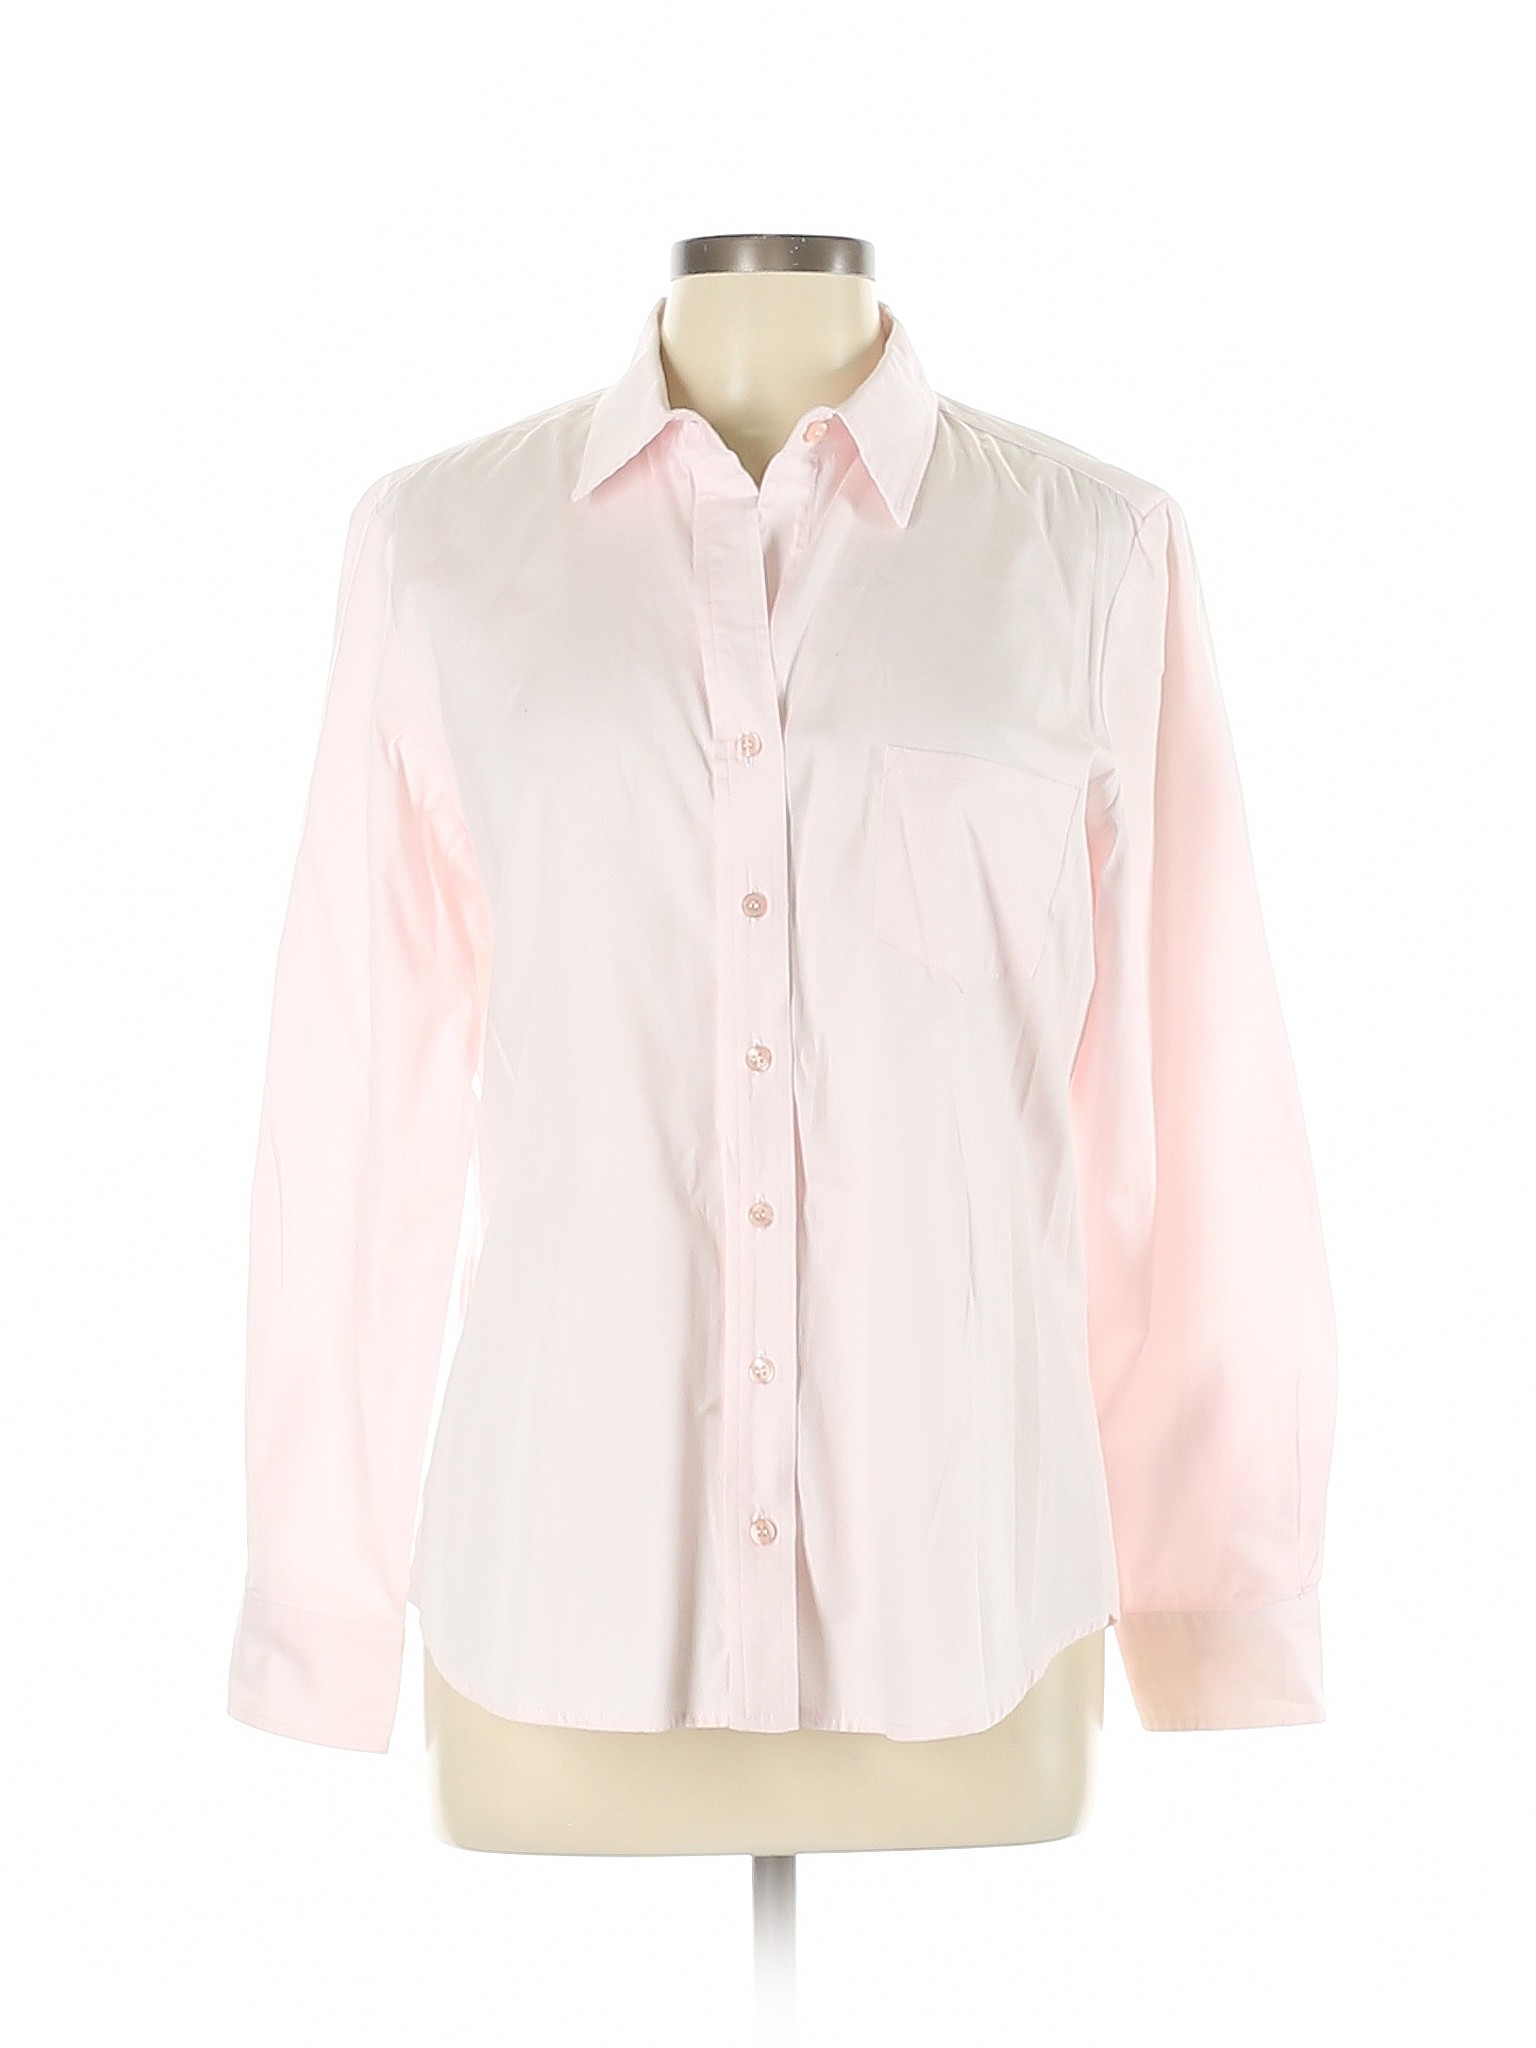 Finley Women Pink Long Sleeve Button-Down Shirt L | eBay